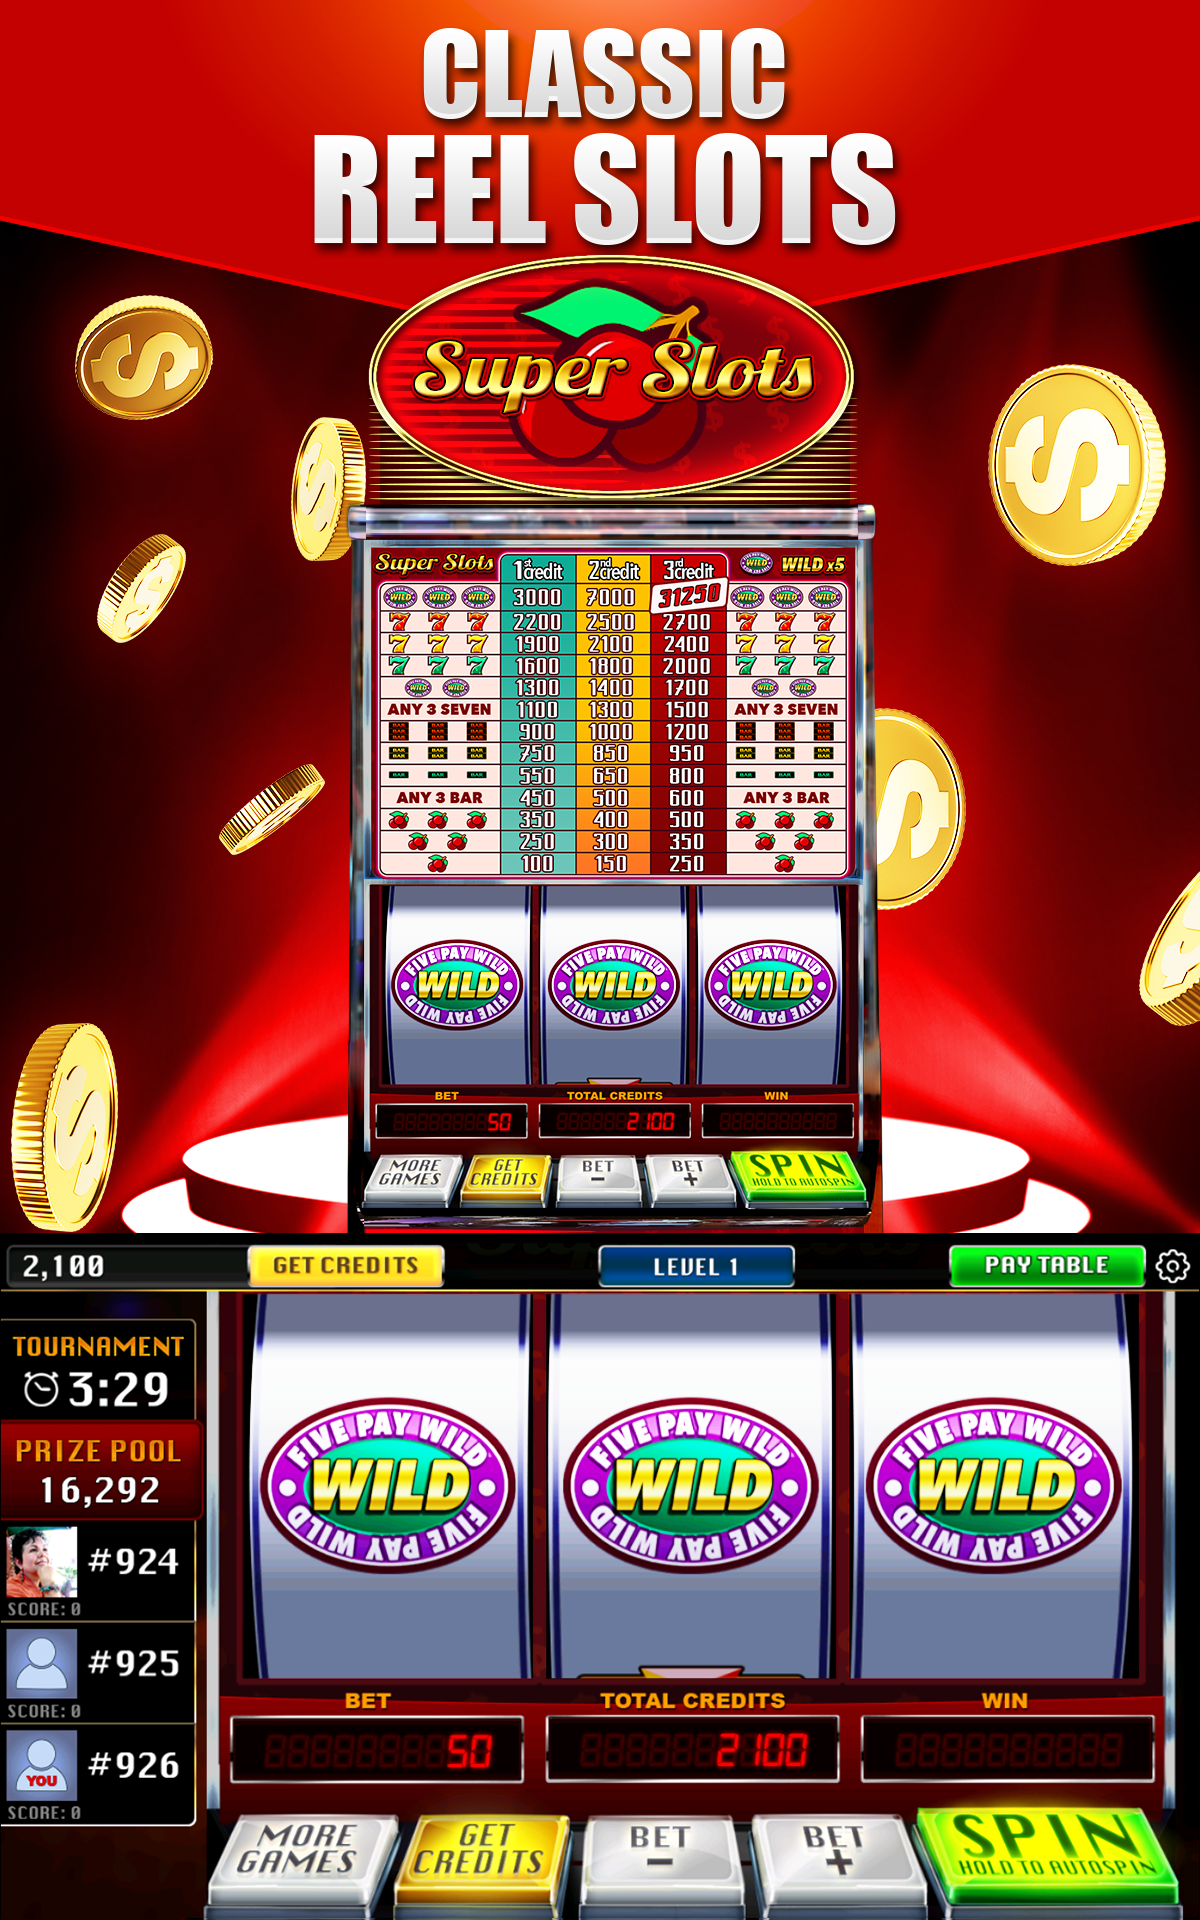 Mobile Slots Win Real Money Gambling